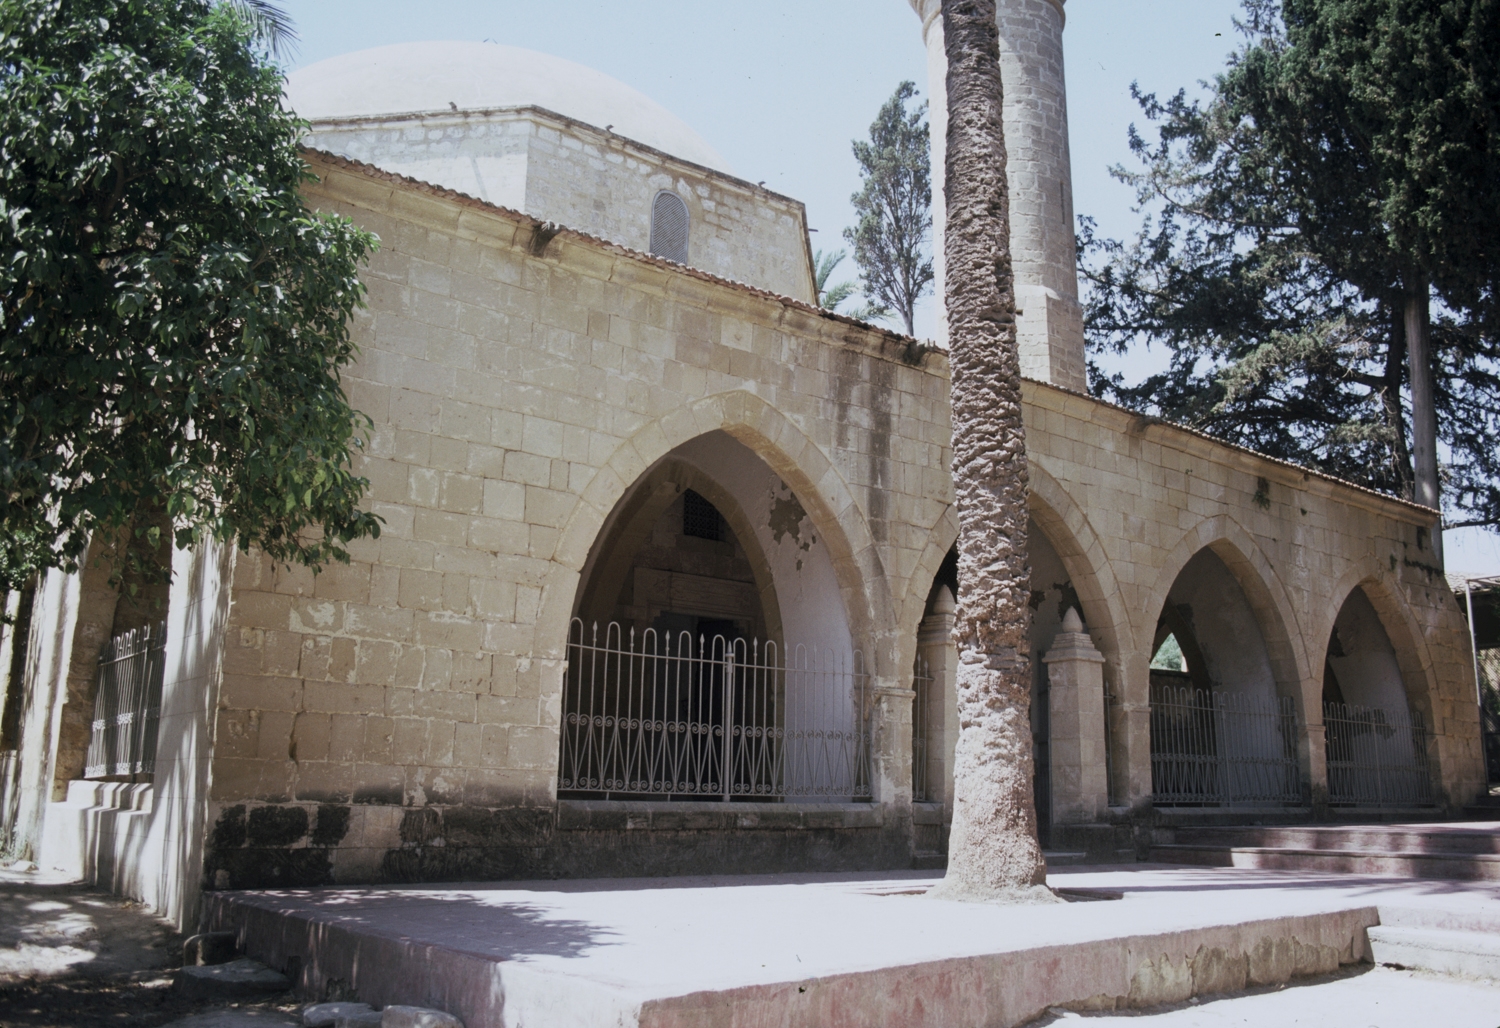 Mosque entrance portico, north side